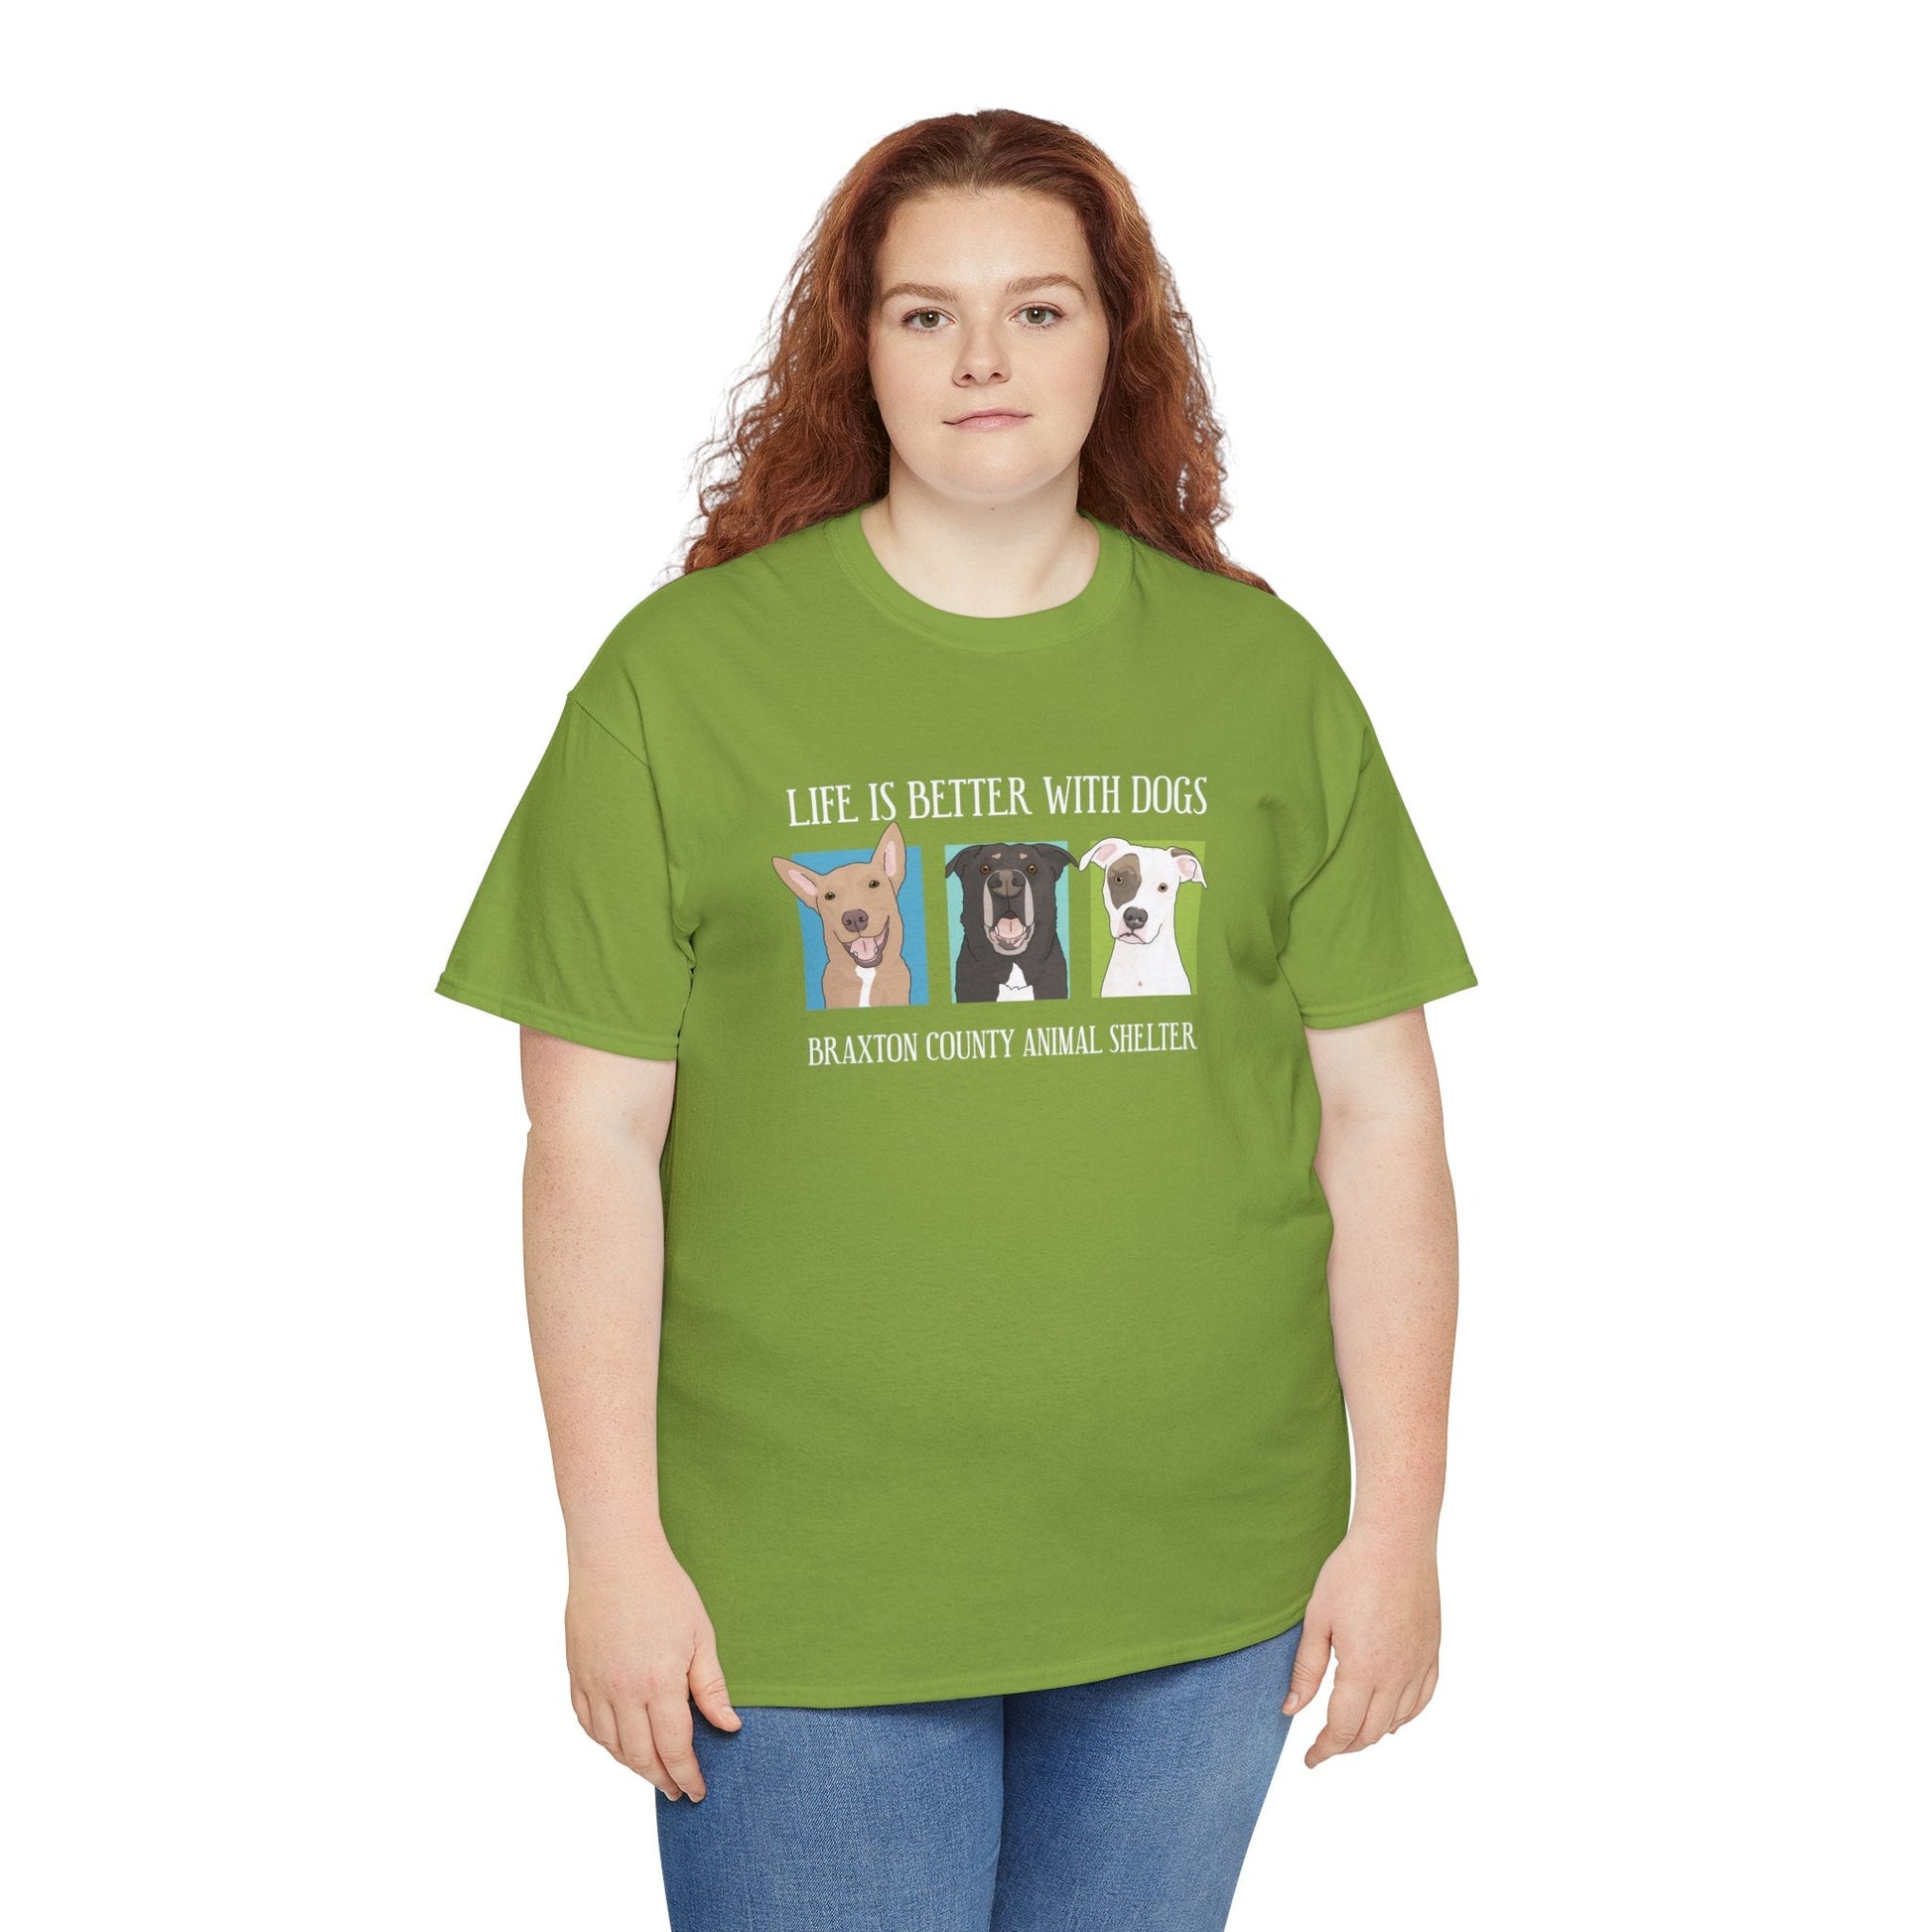 Gunner, Bear, and Abby | FUNDRAISER for Braxton County Animal Shelter | T-shirt - Detezi Designs-11678062079346871870